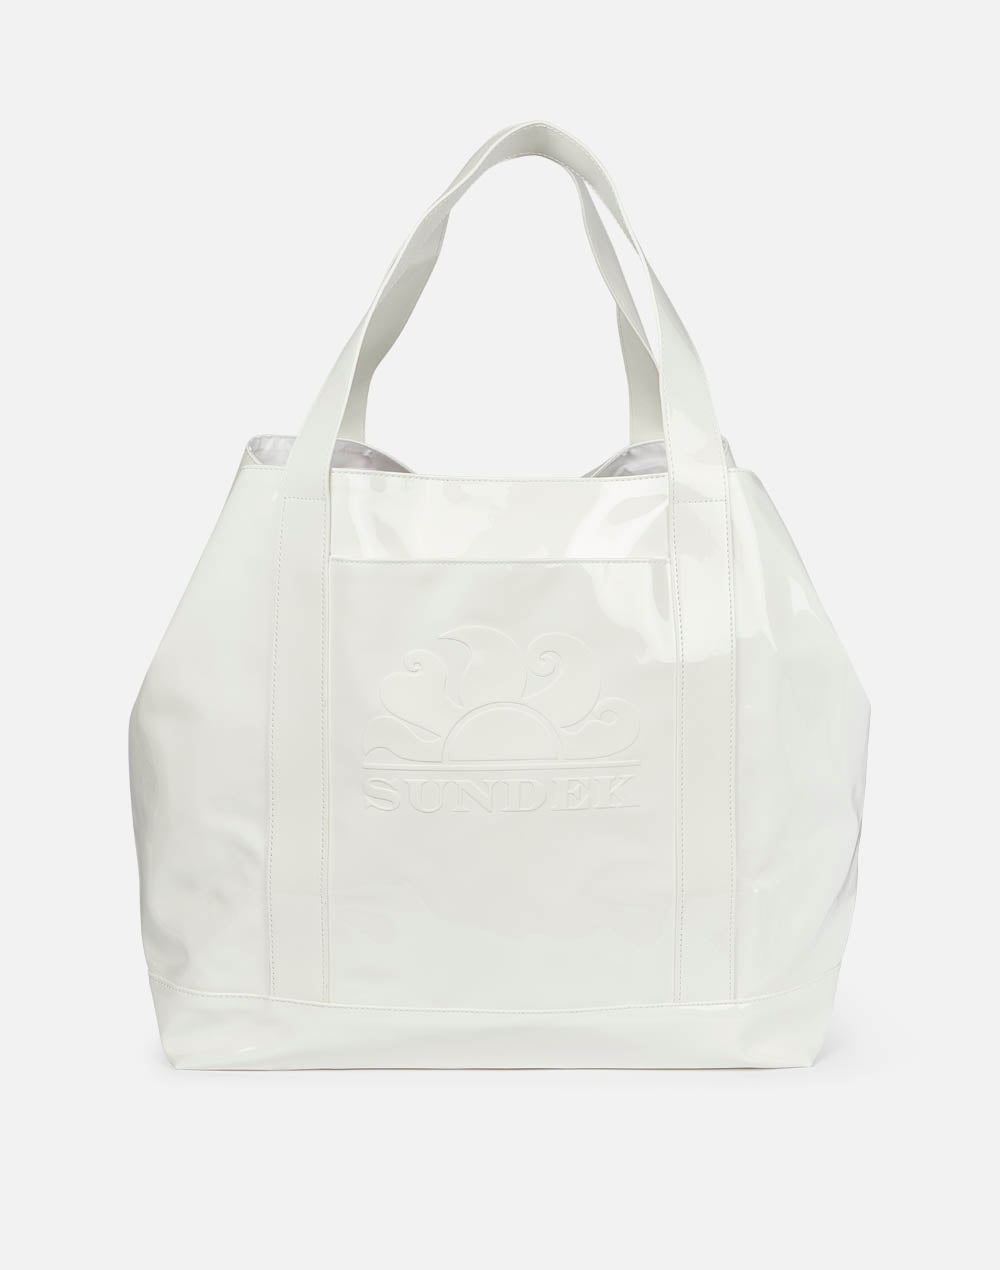 Tiffany - Large Shiny Beach Bag